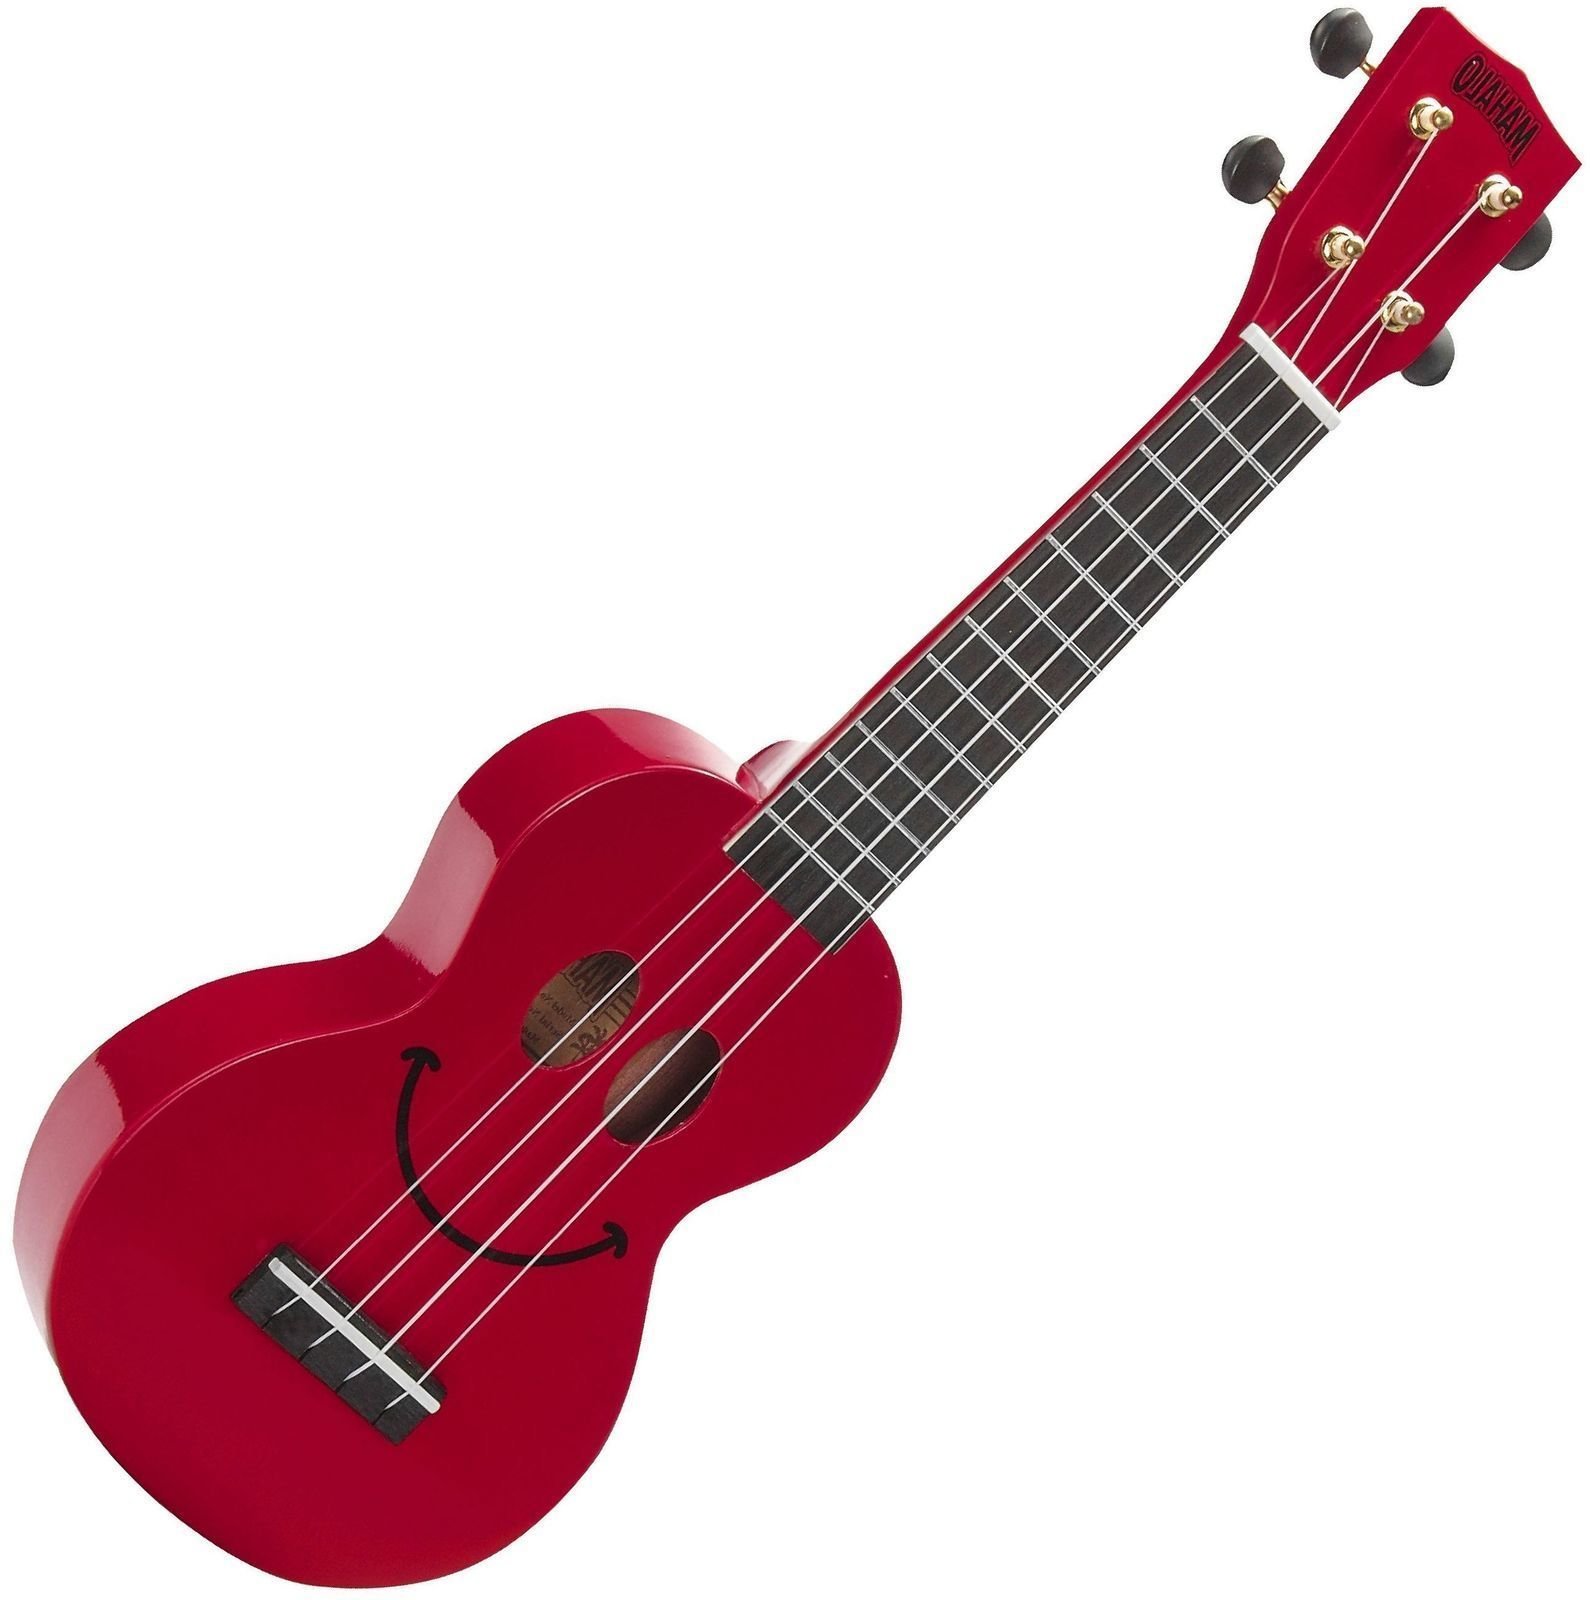 Soprano ukulele Mahalo U-SMILE Soprano ukulele Red